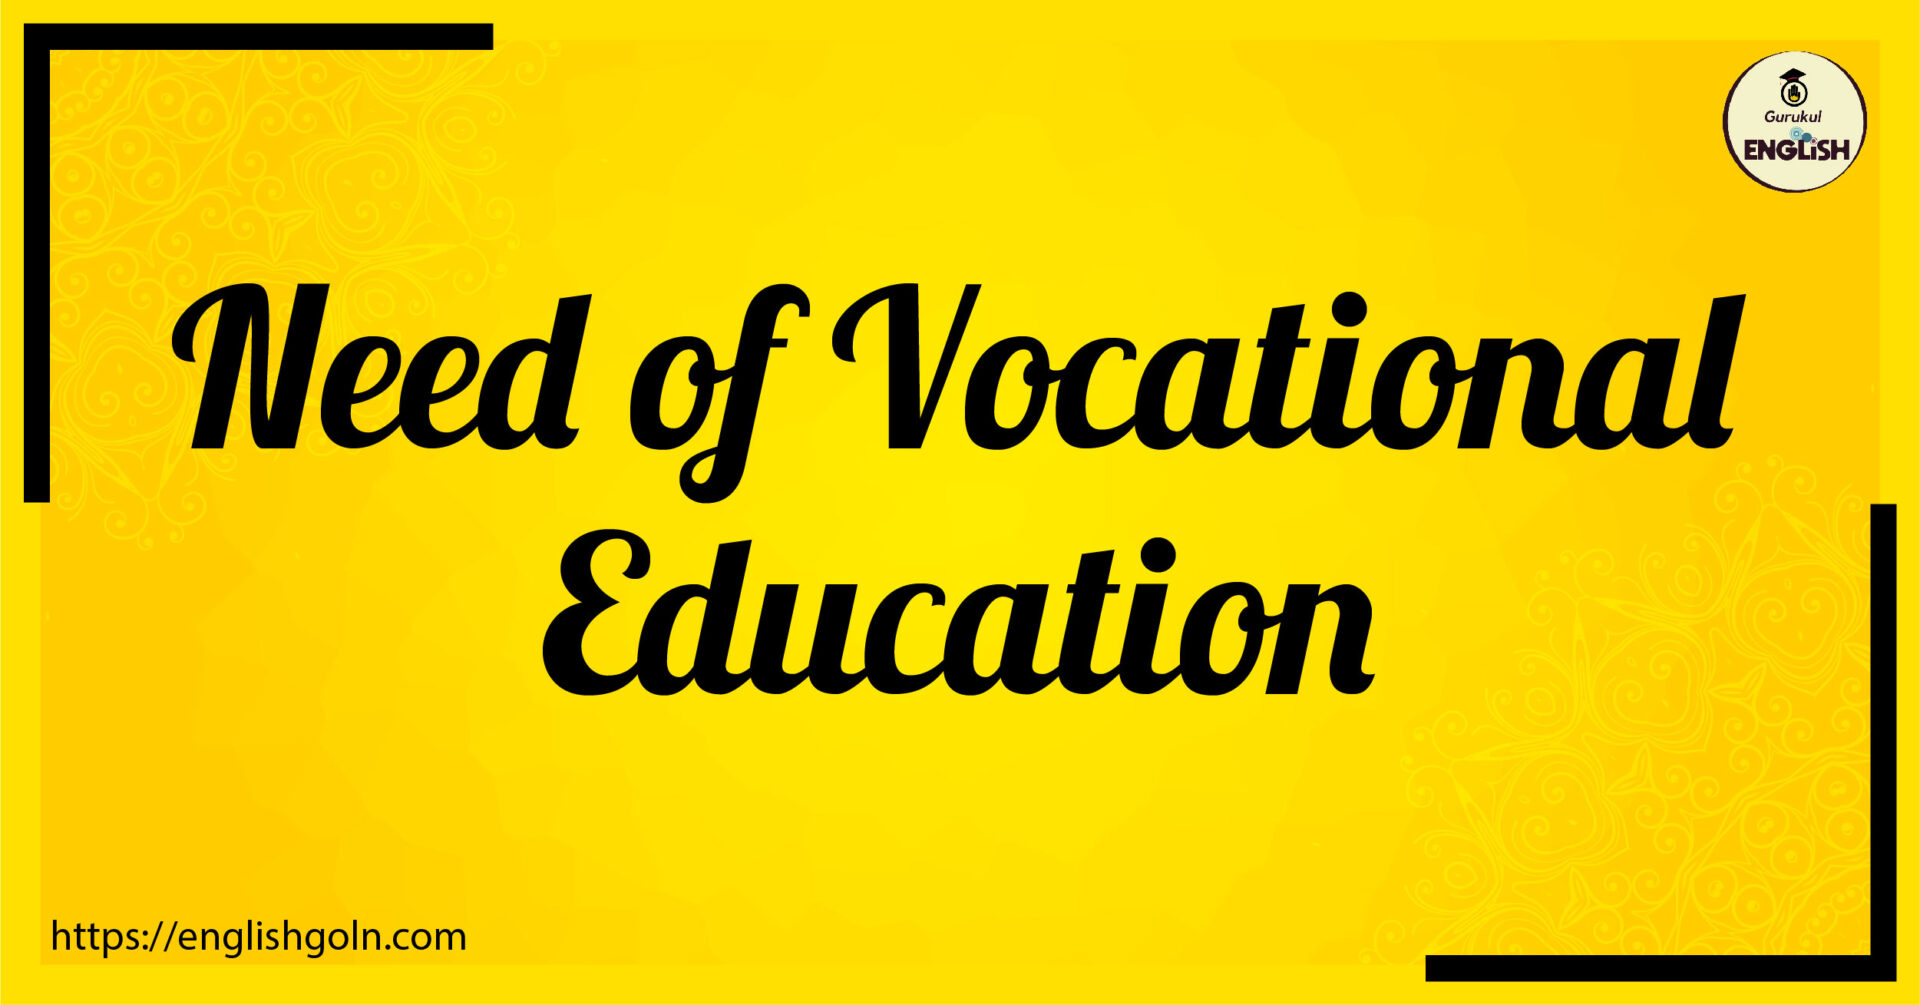 Essay Writing - Need of Vocational Education [ বৃত্তিমূলক শিক্ষার প্রয়োজনীয়তা ]